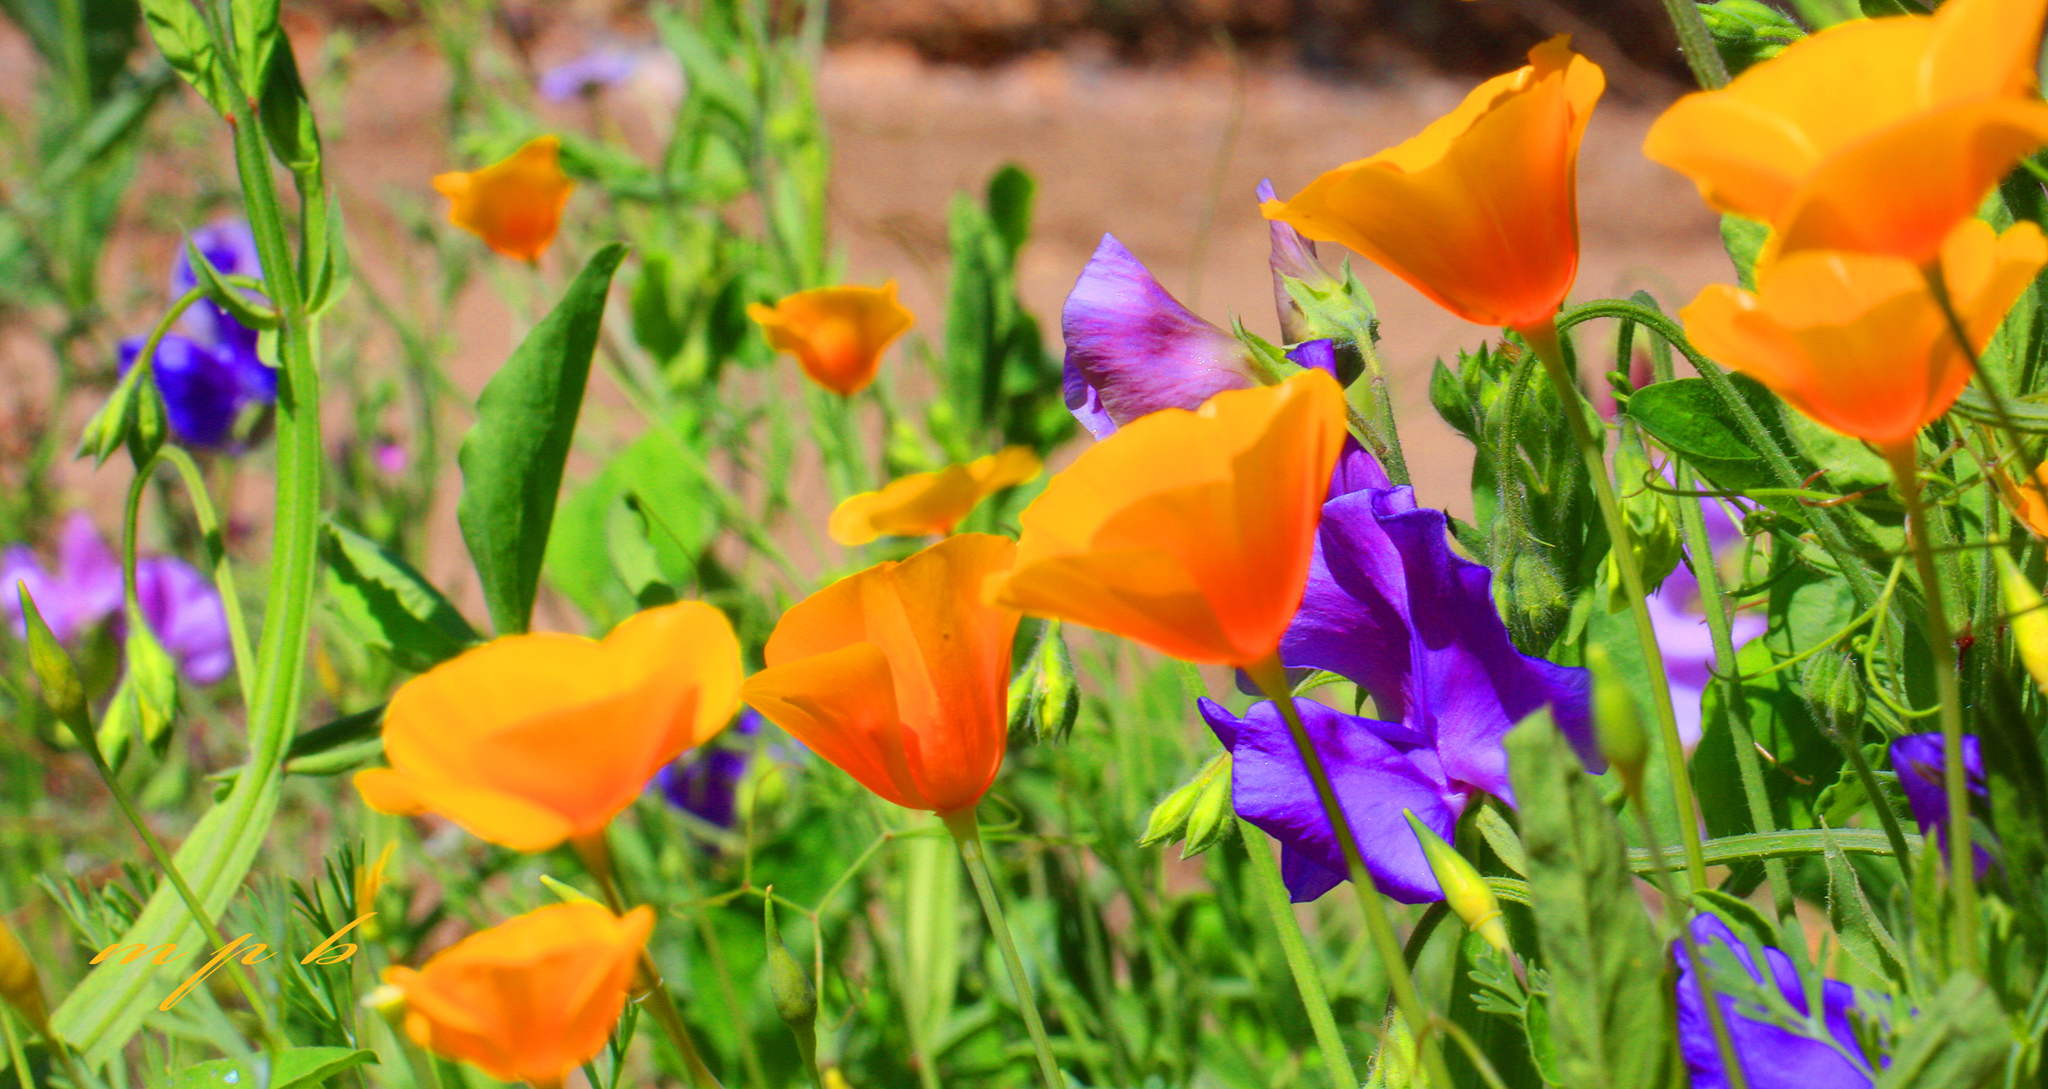 Descarga gratuita de fondo de pantalla para móvil de Naturaleza, Flores, Verano, Flor, Amapola, Flor Purpura, Tierra/naturaleza, Flor Naranja.